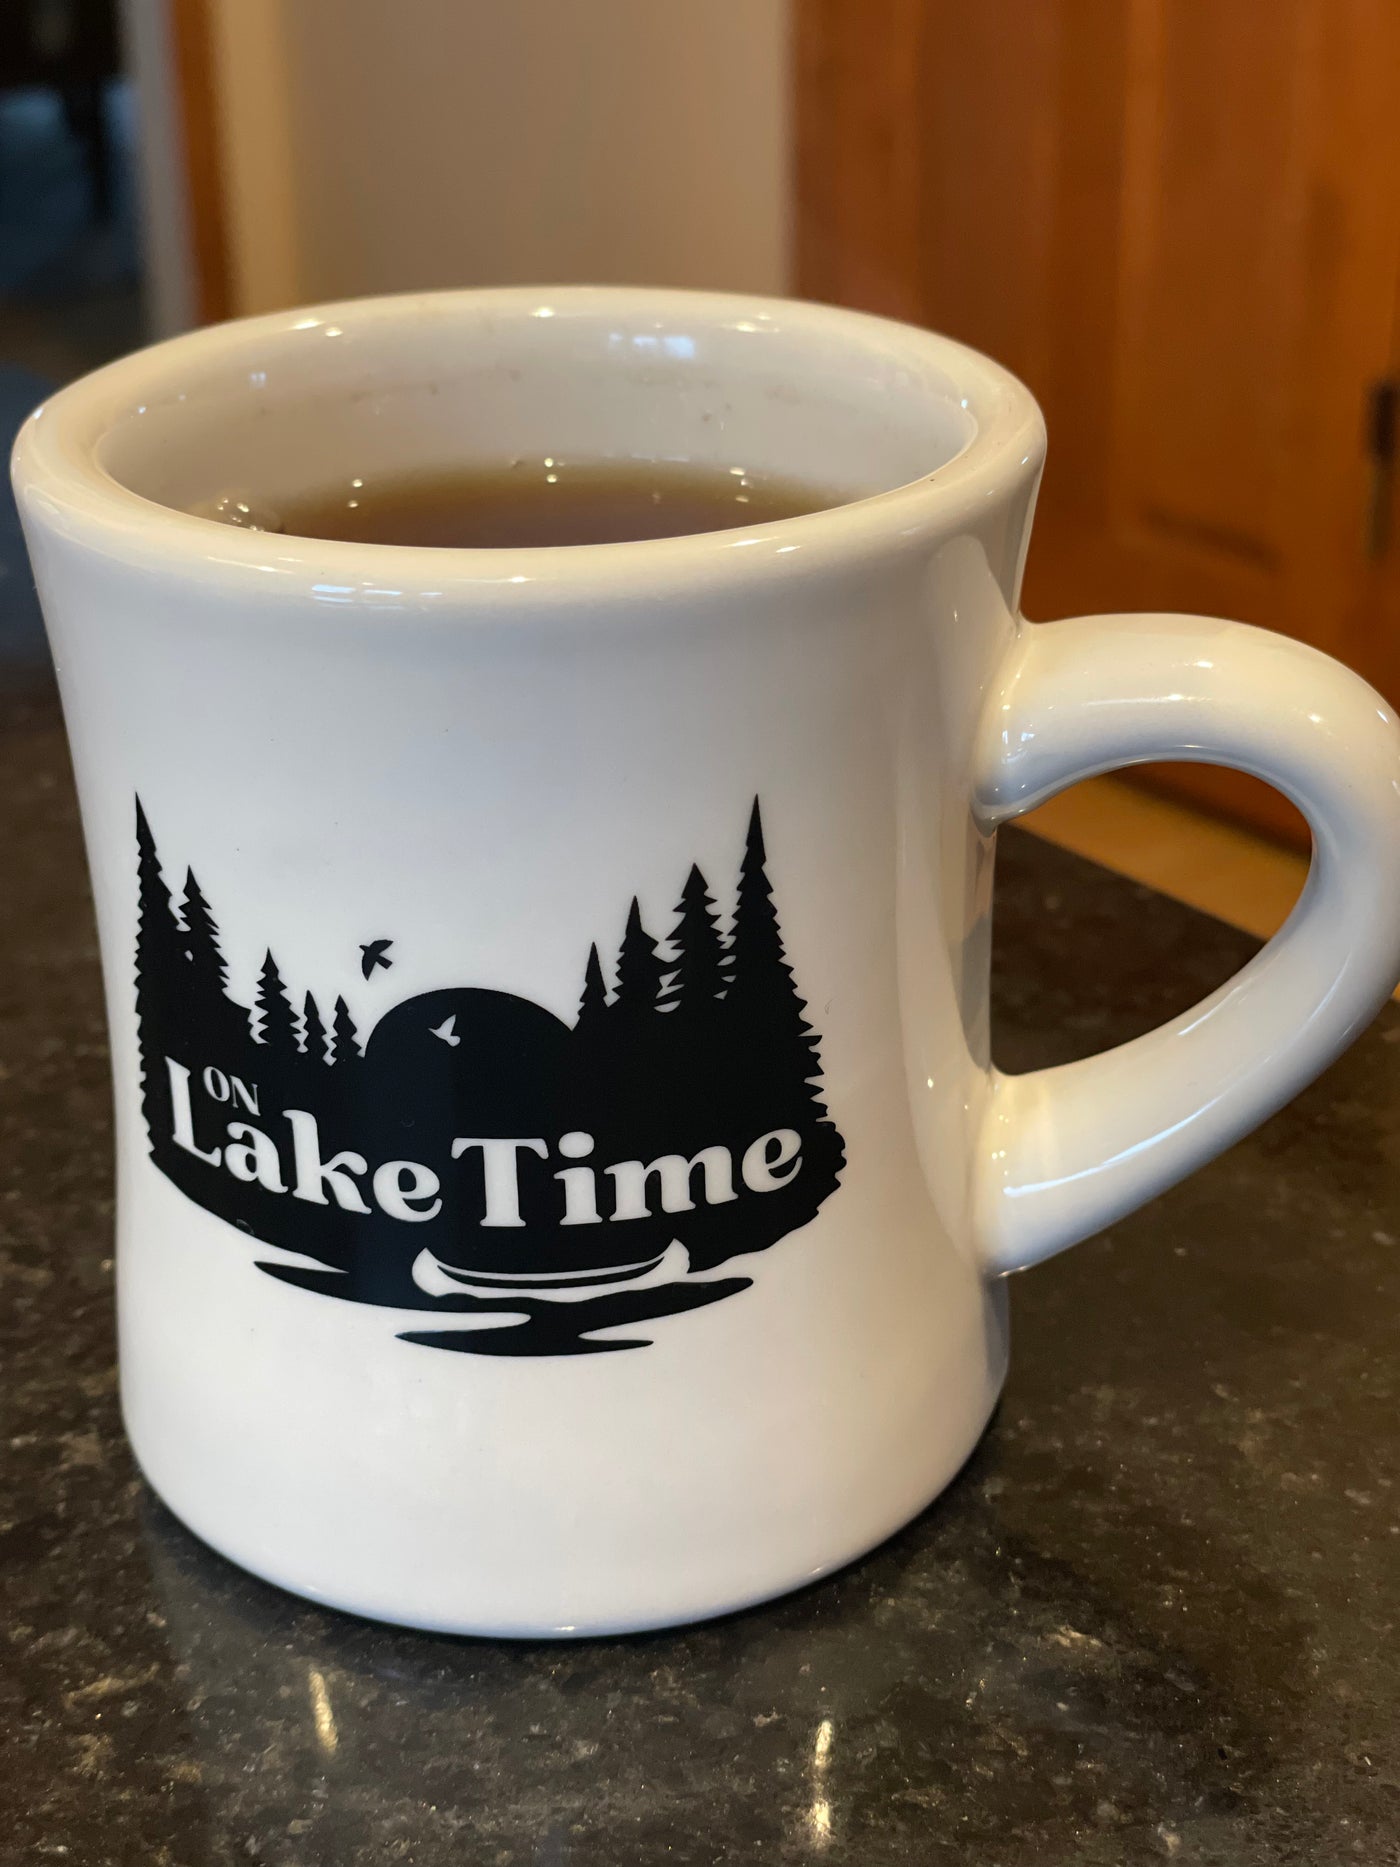 On Lake time ceramic white diner mug